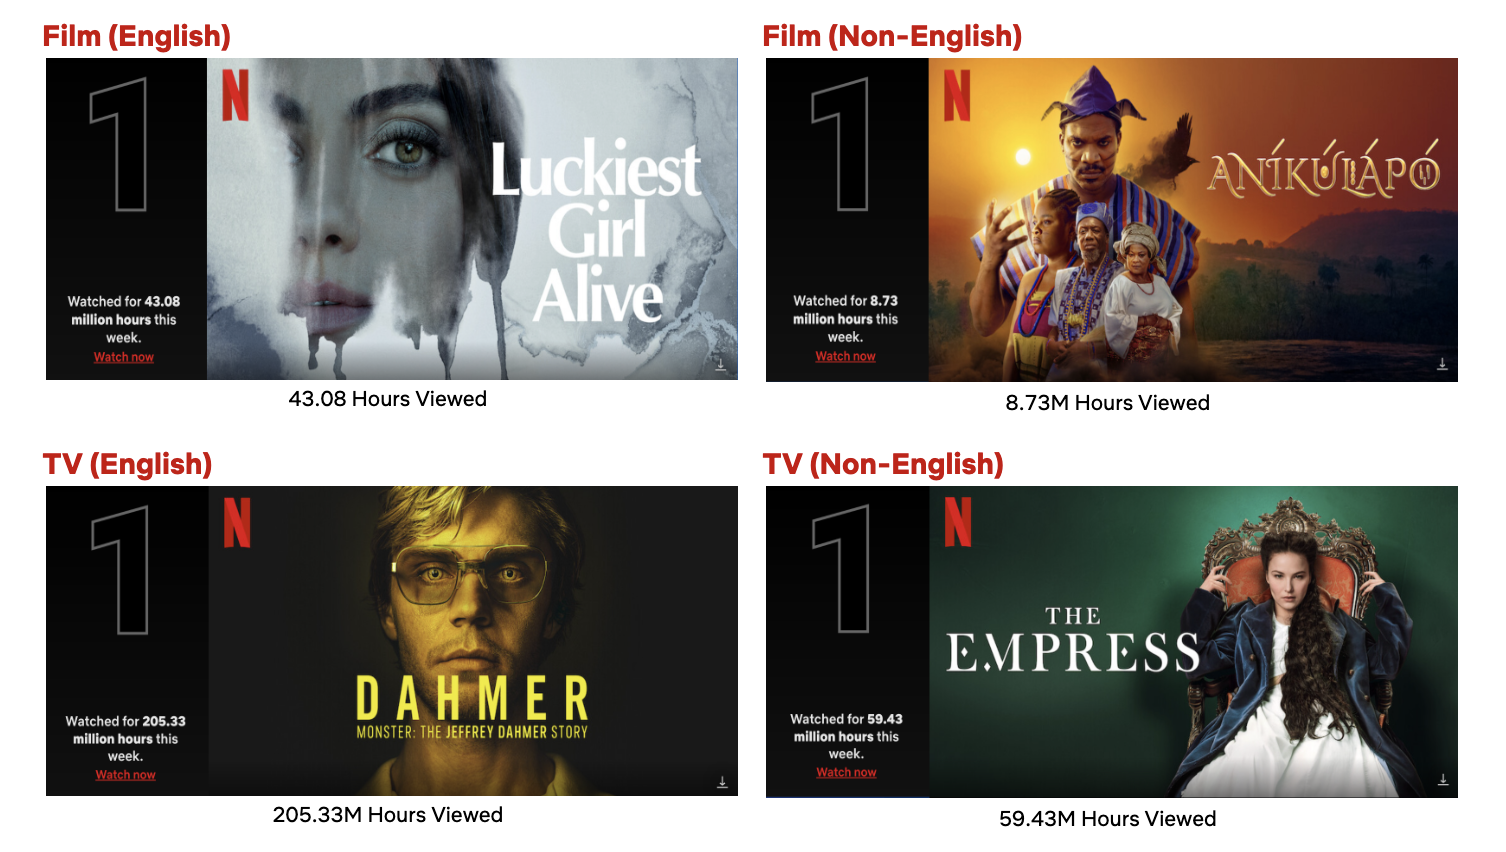 Watch DAHMER  Netflix Official Site